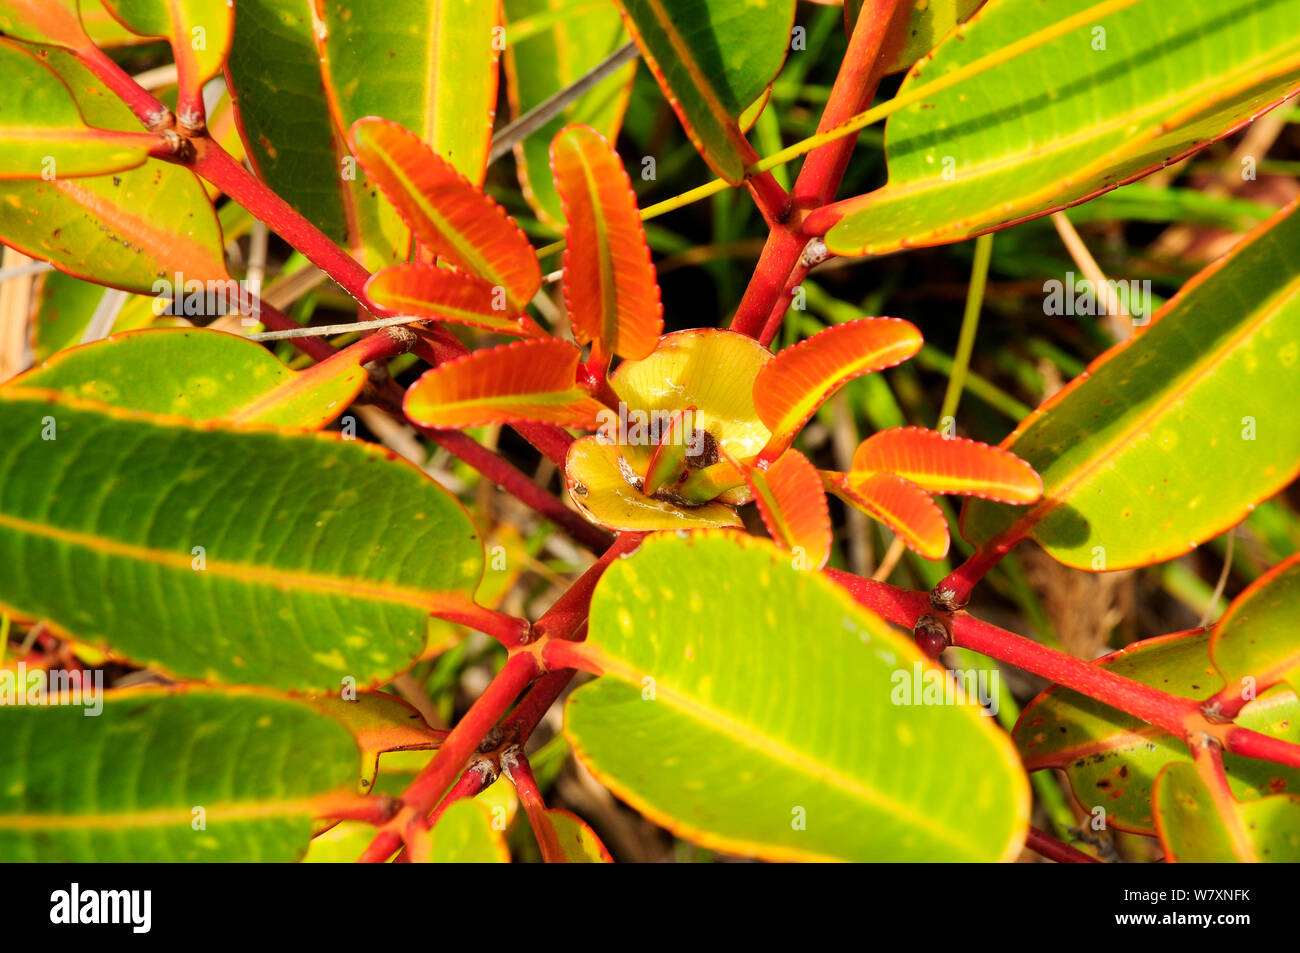 Planta (Cunonia macrophylla) cerca de hojas, Blue River Provincial Park / Parque Provincial de la Riviere Bleue, Nueva Caledonia. Especies endémicas. Foto de stock